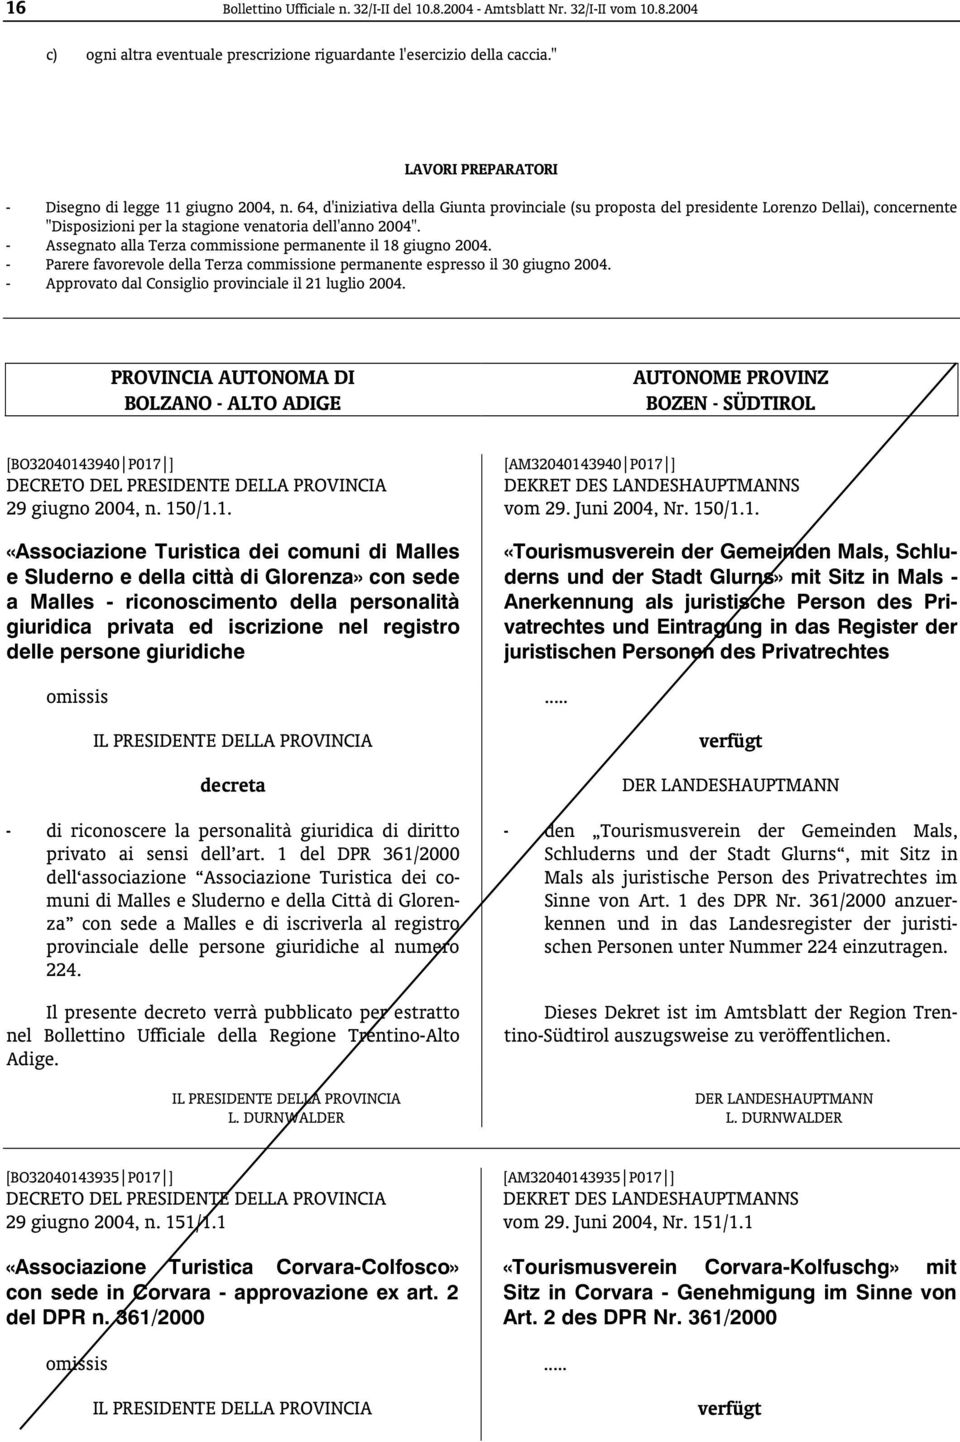 64, d'iniziativa della Giunta provinciale (su proposta del presidente Lorenzo Dellai), concernente "Disposizioni per la stagione venatoria dell'anno 2004".